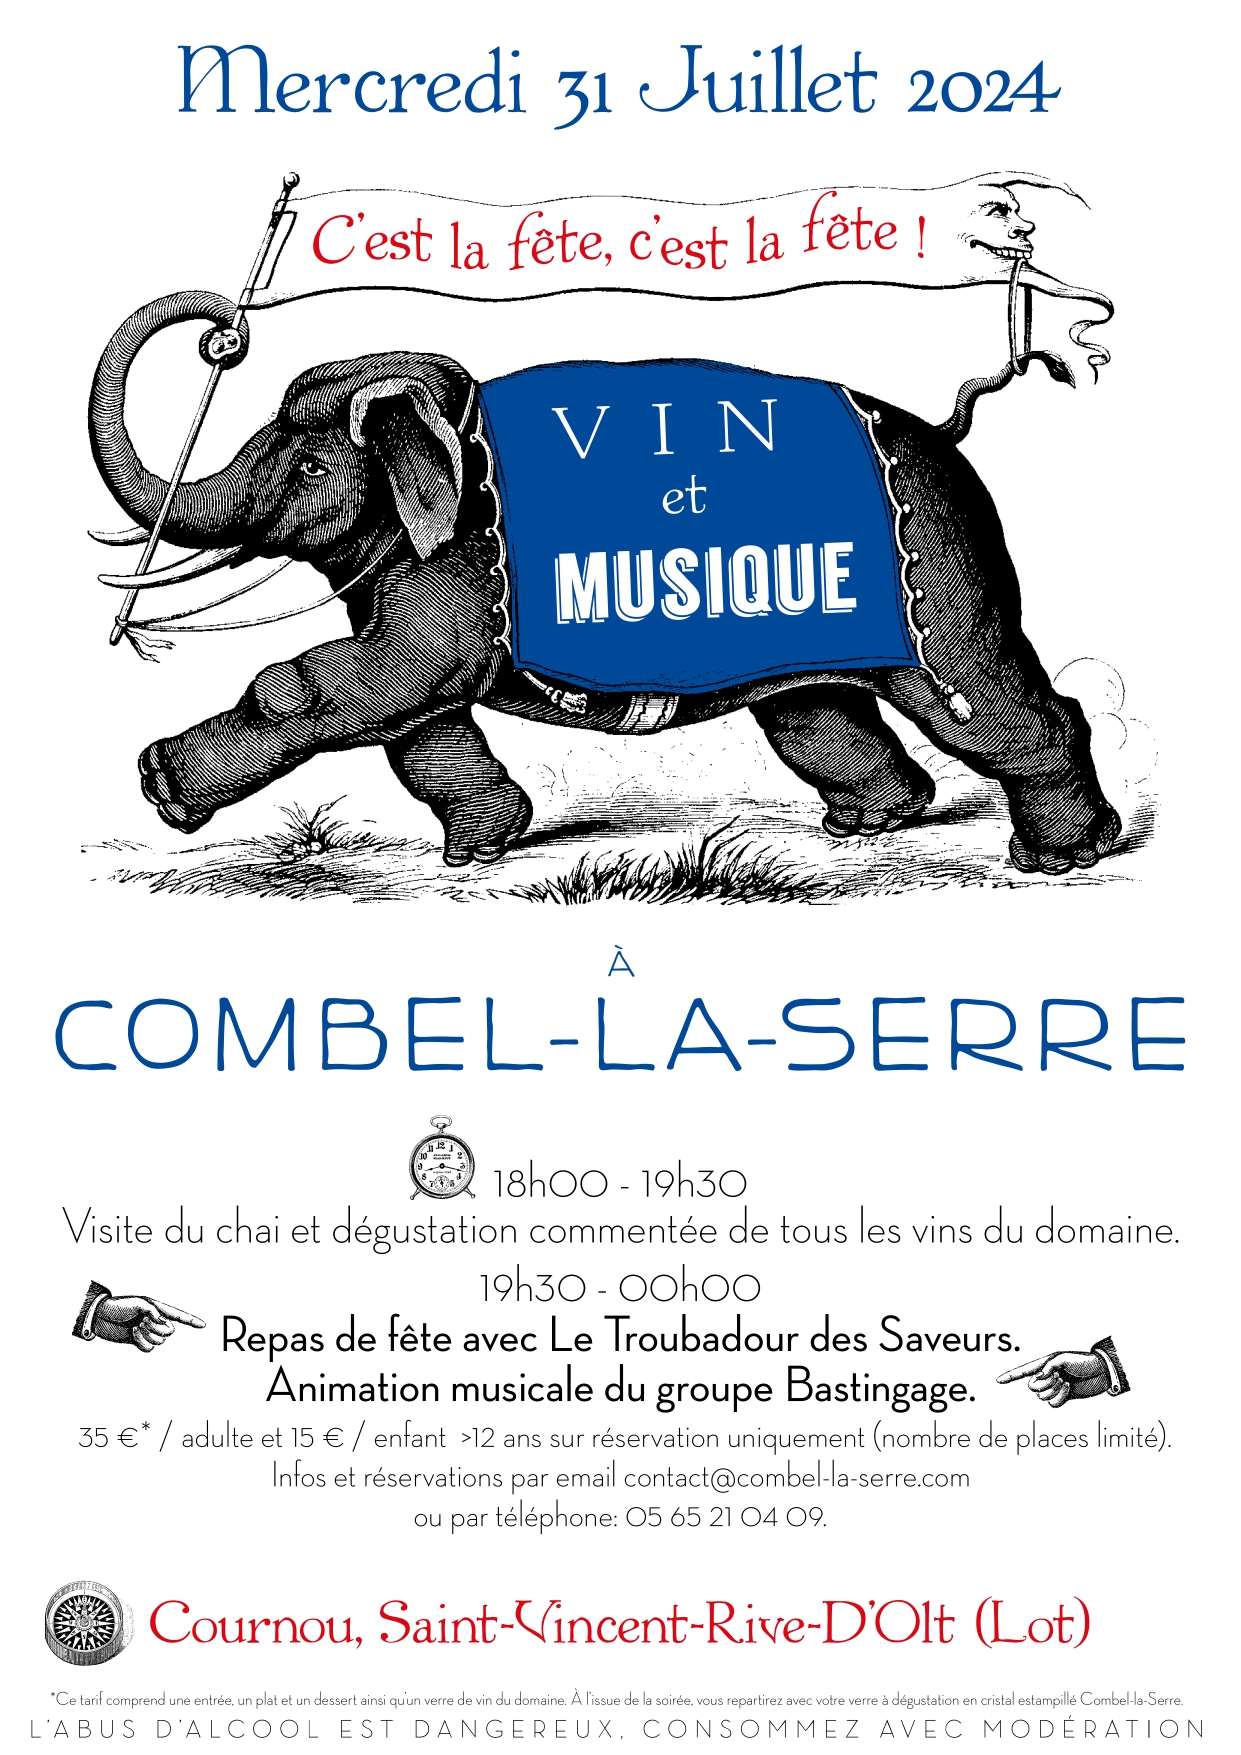 Figeac : Vin et musique au domaine de Combel-la-Serre